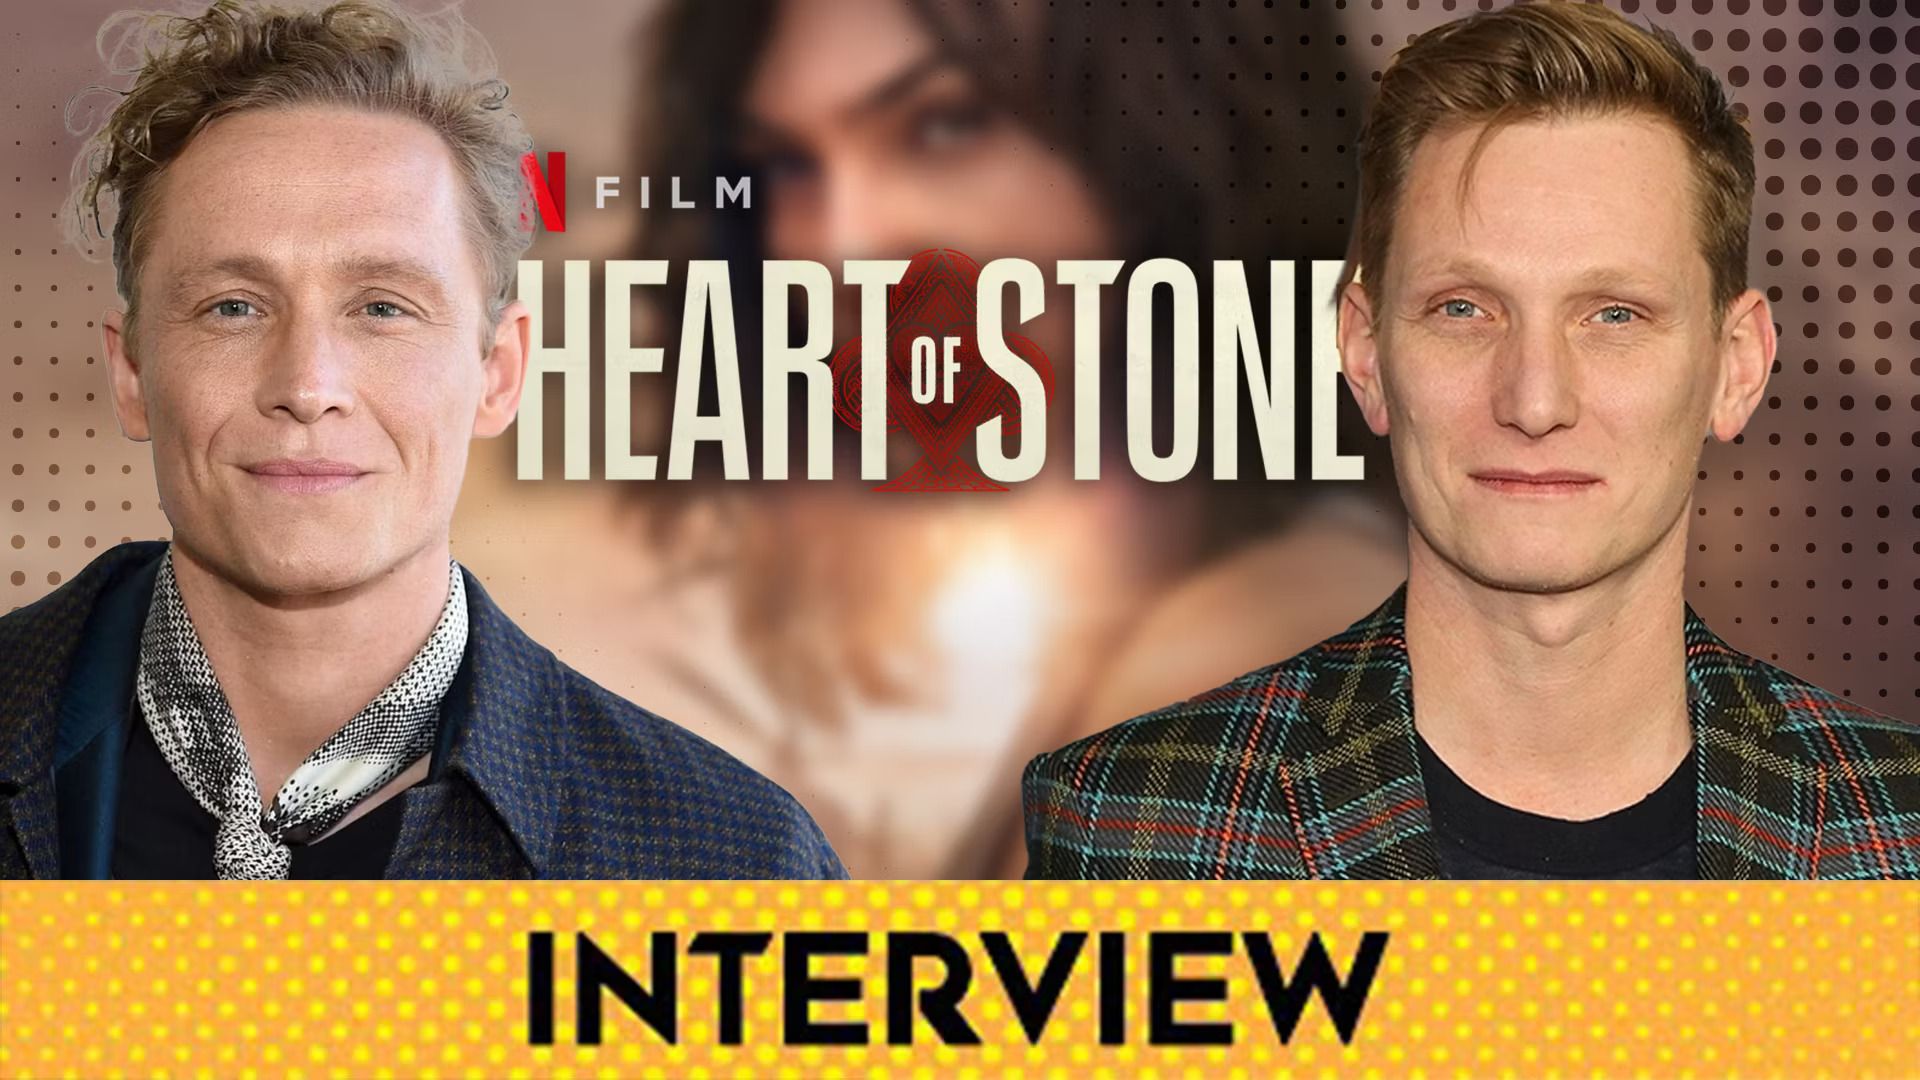 Tom Harper & Matthias Schweighöfer Break Down Heart of Stone's Biggest Surprises